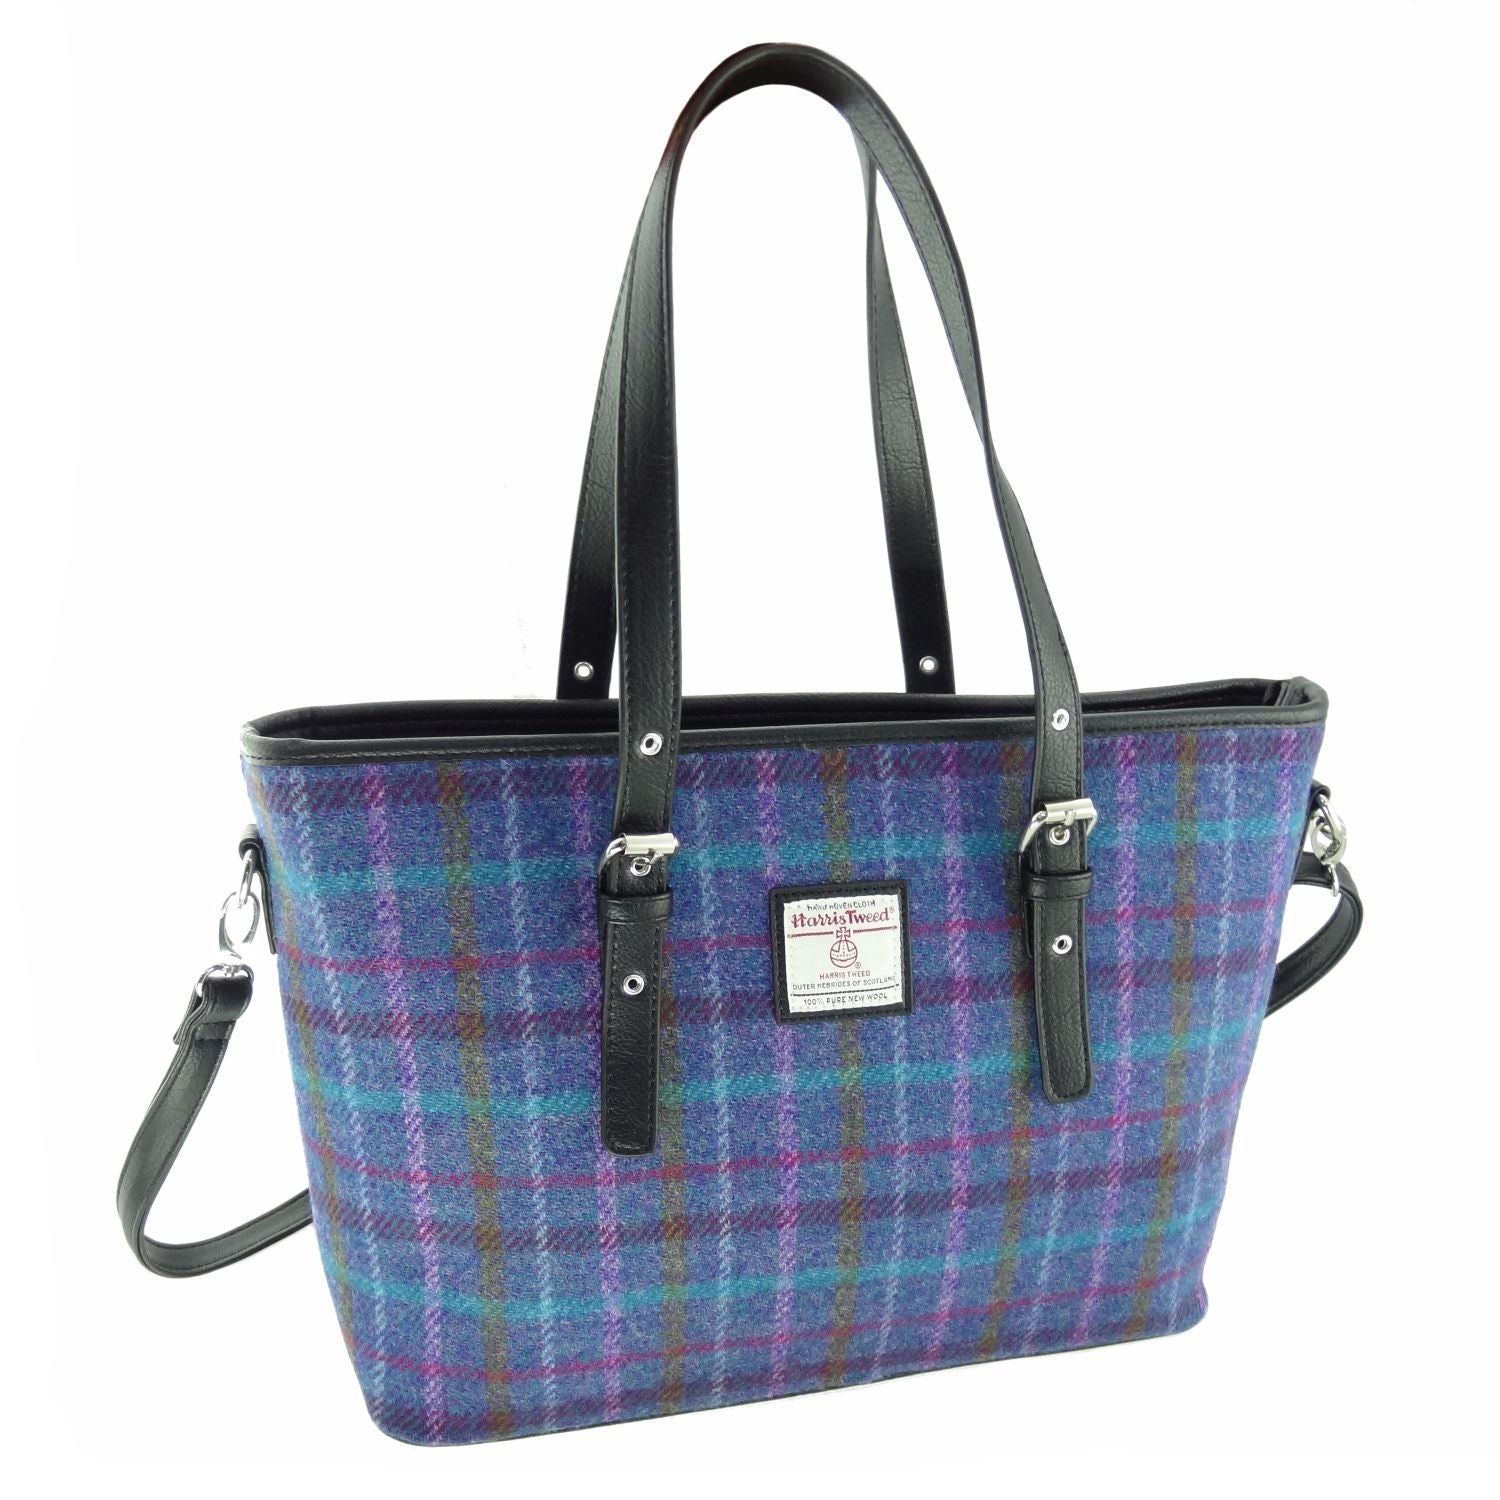 Harris Tweed Spey Tote Handbag with Shoulder Strap - 17 Tweeds Availab ...